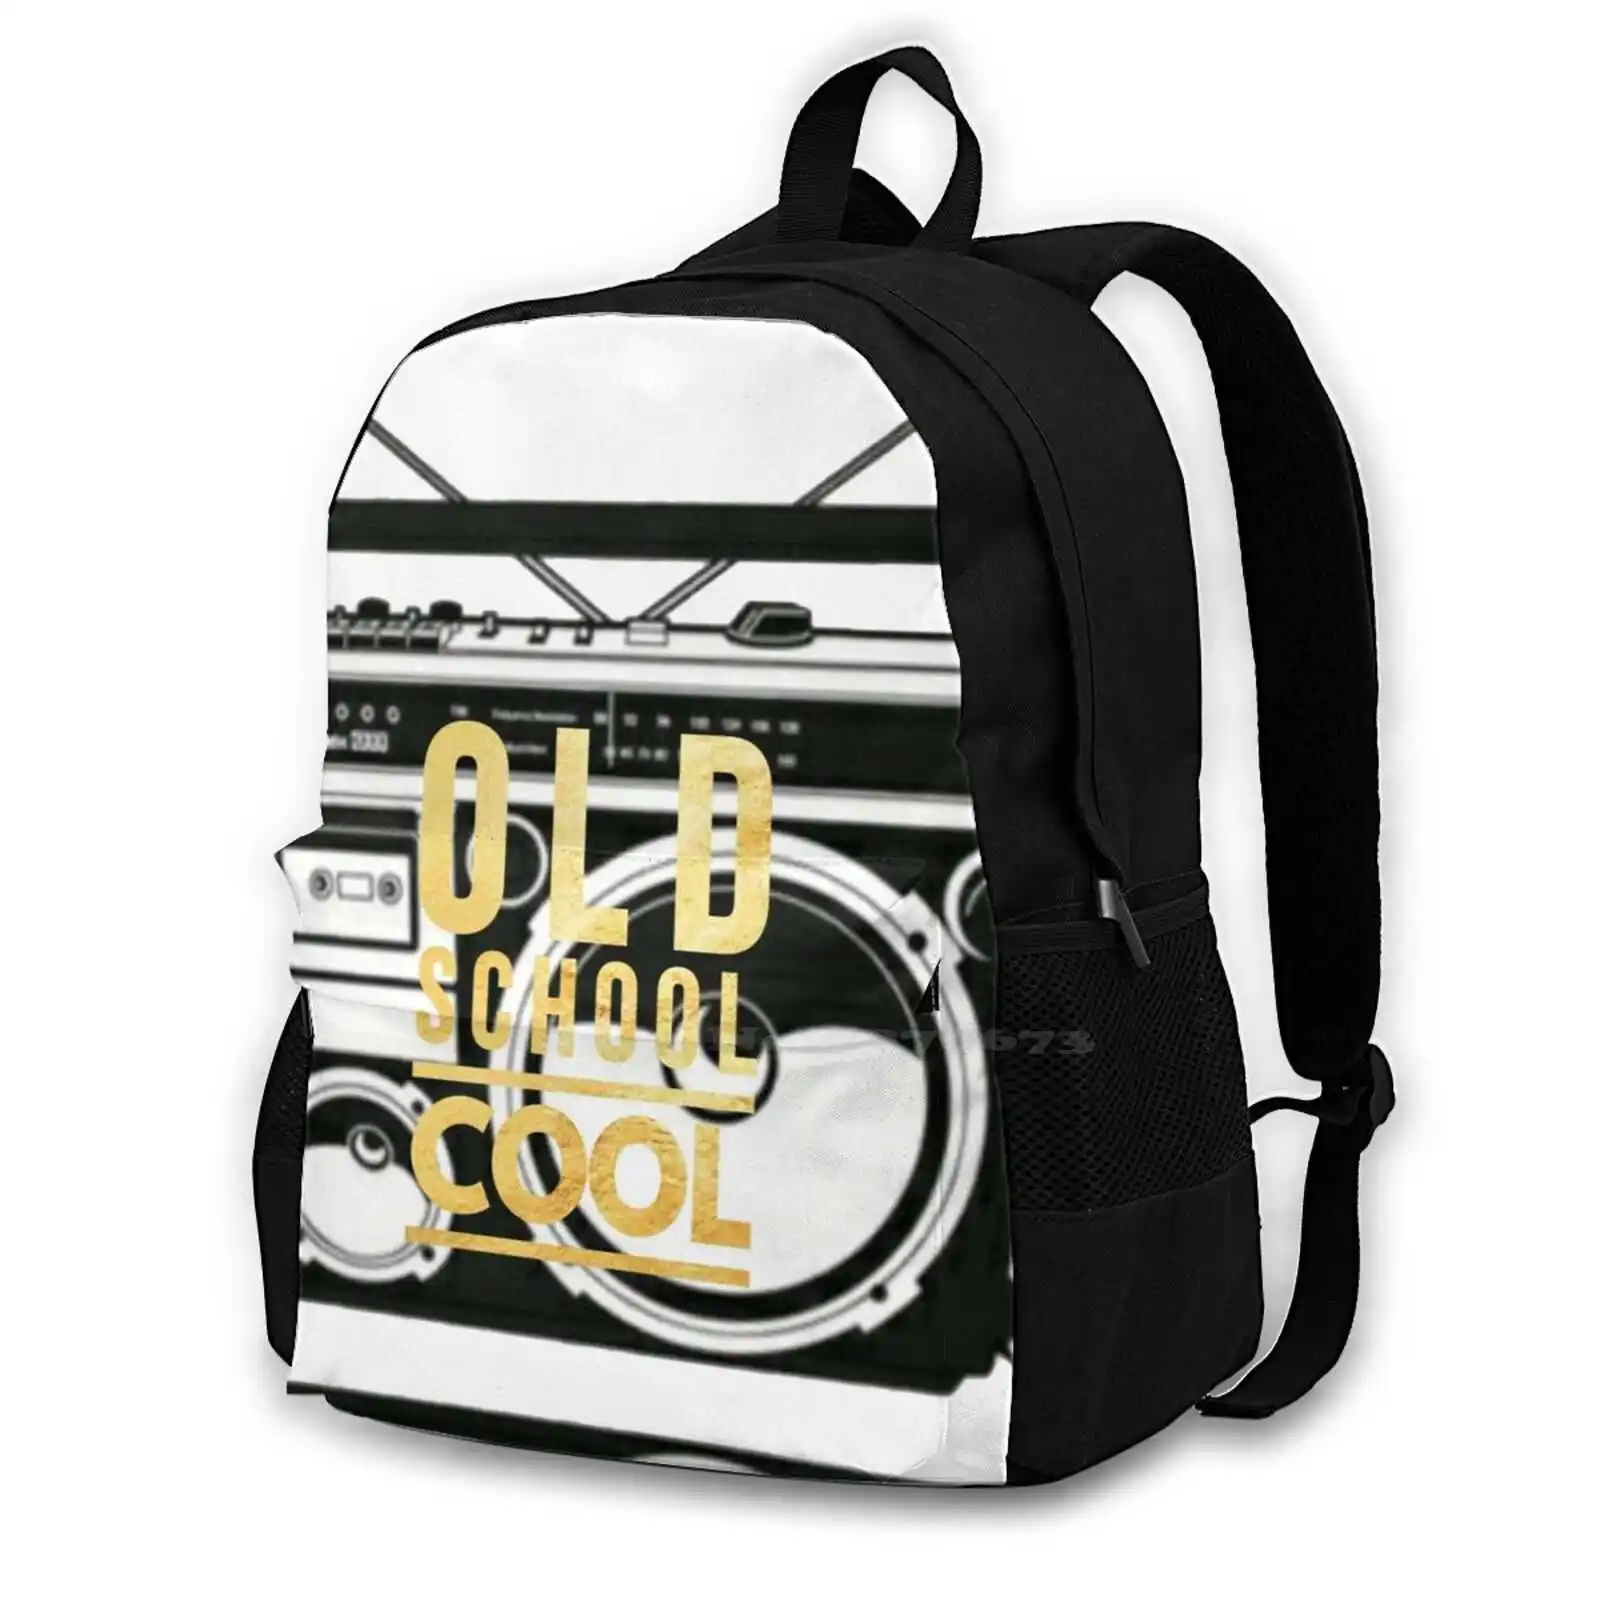 

Old-School Cool Travel Laptop Bagpack School Bags Old School Fresh